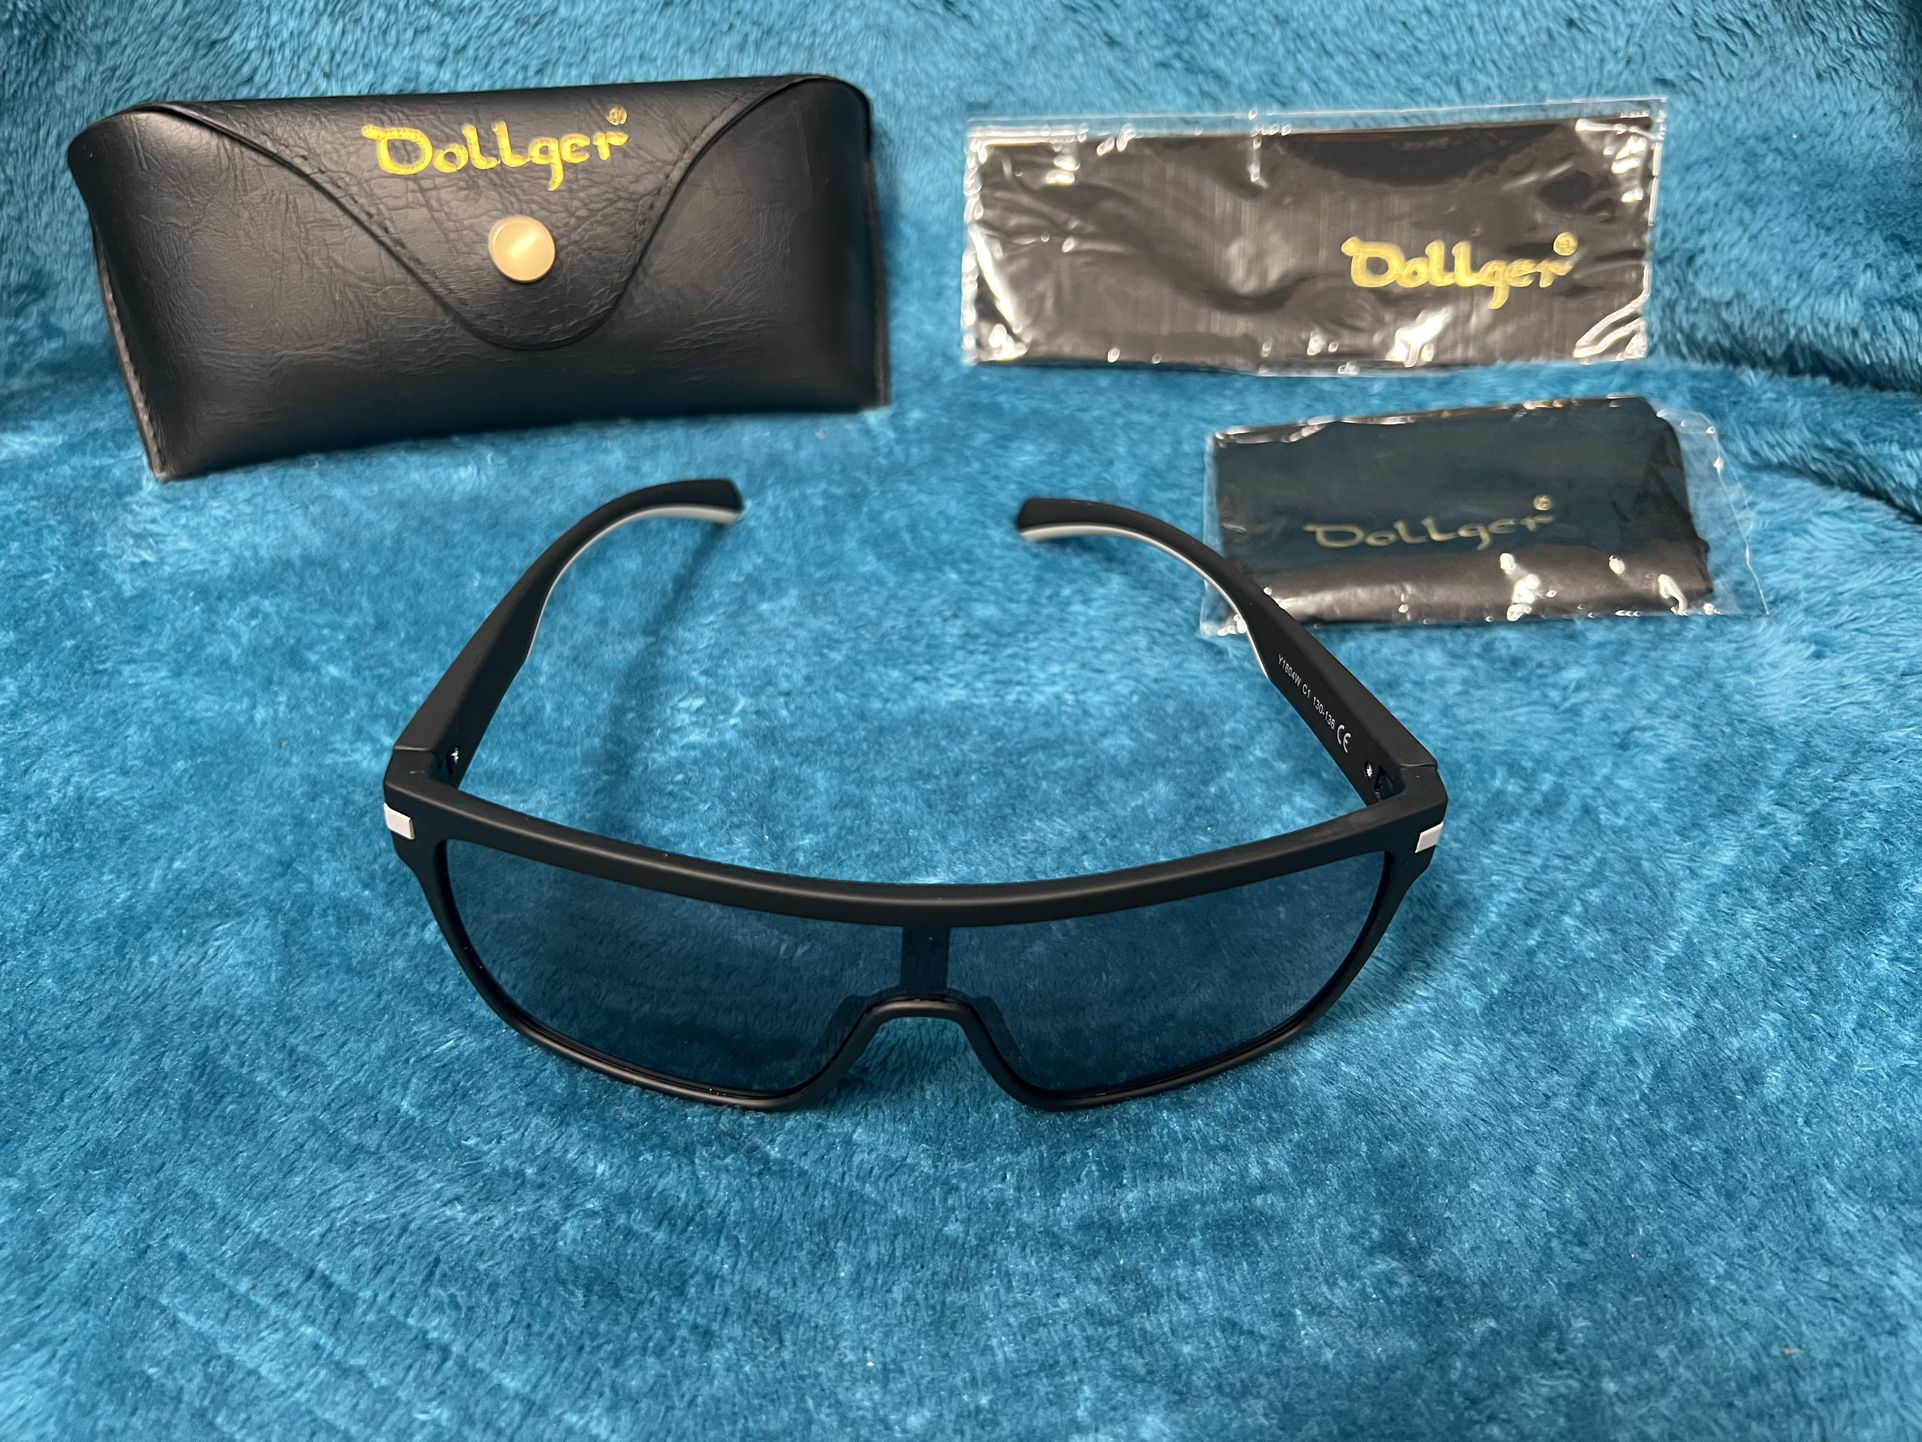 BRAND NEW Dollger UV400 Sport Oversized Sunglasses for Women Men, Square Trendy Flat Top Sunglasses Siamese Lens.  OVERSIZED SUNGLASSES DESIGN 